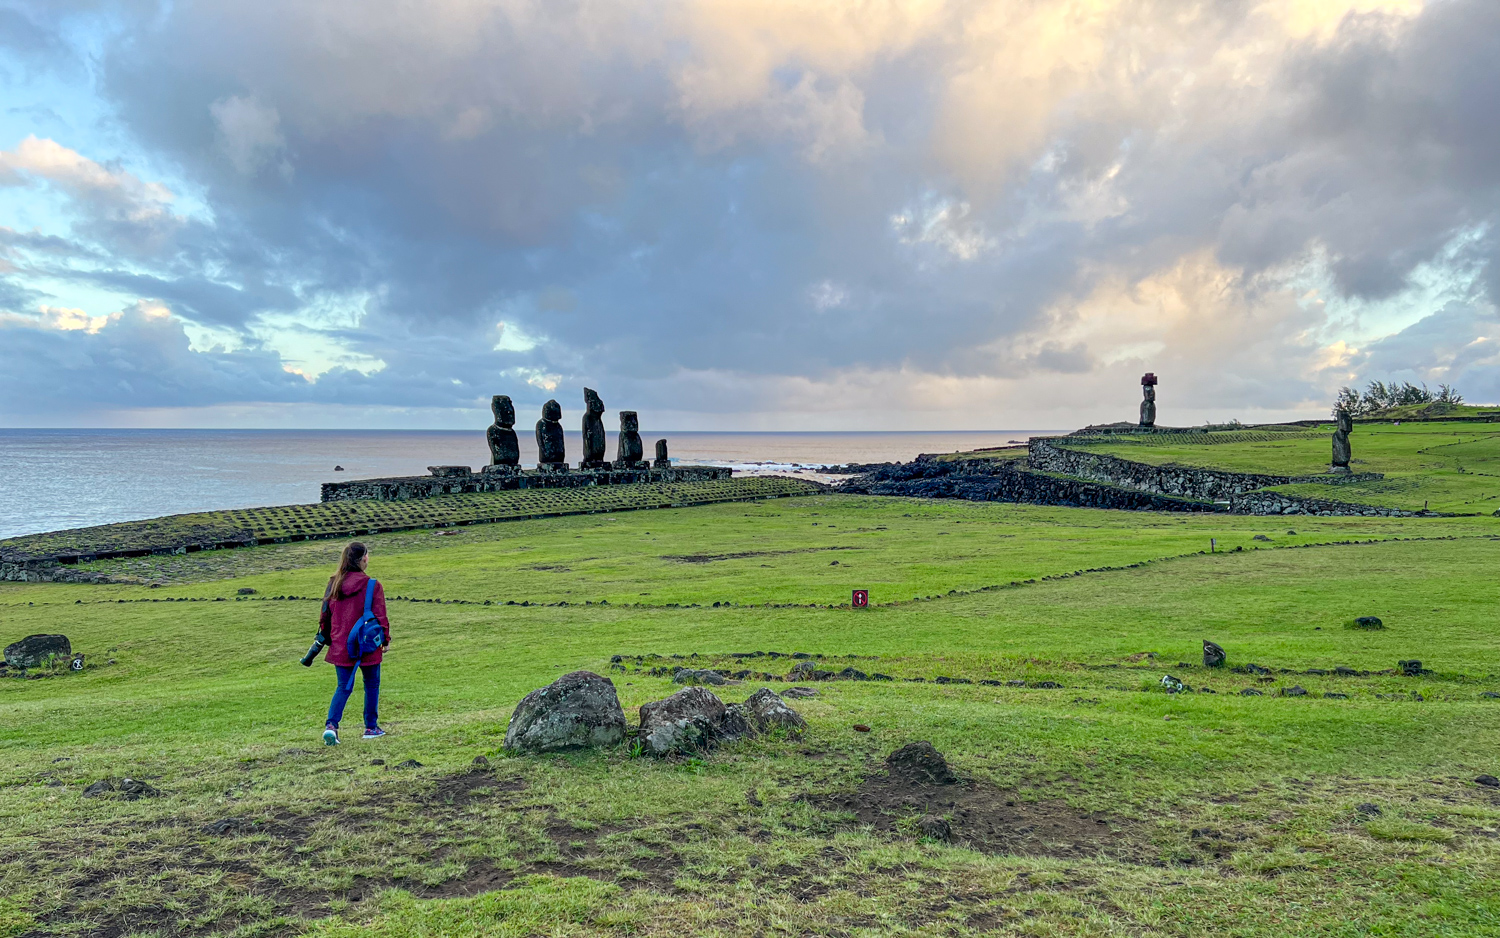 Kel walks toward the moai statues at sunrise.